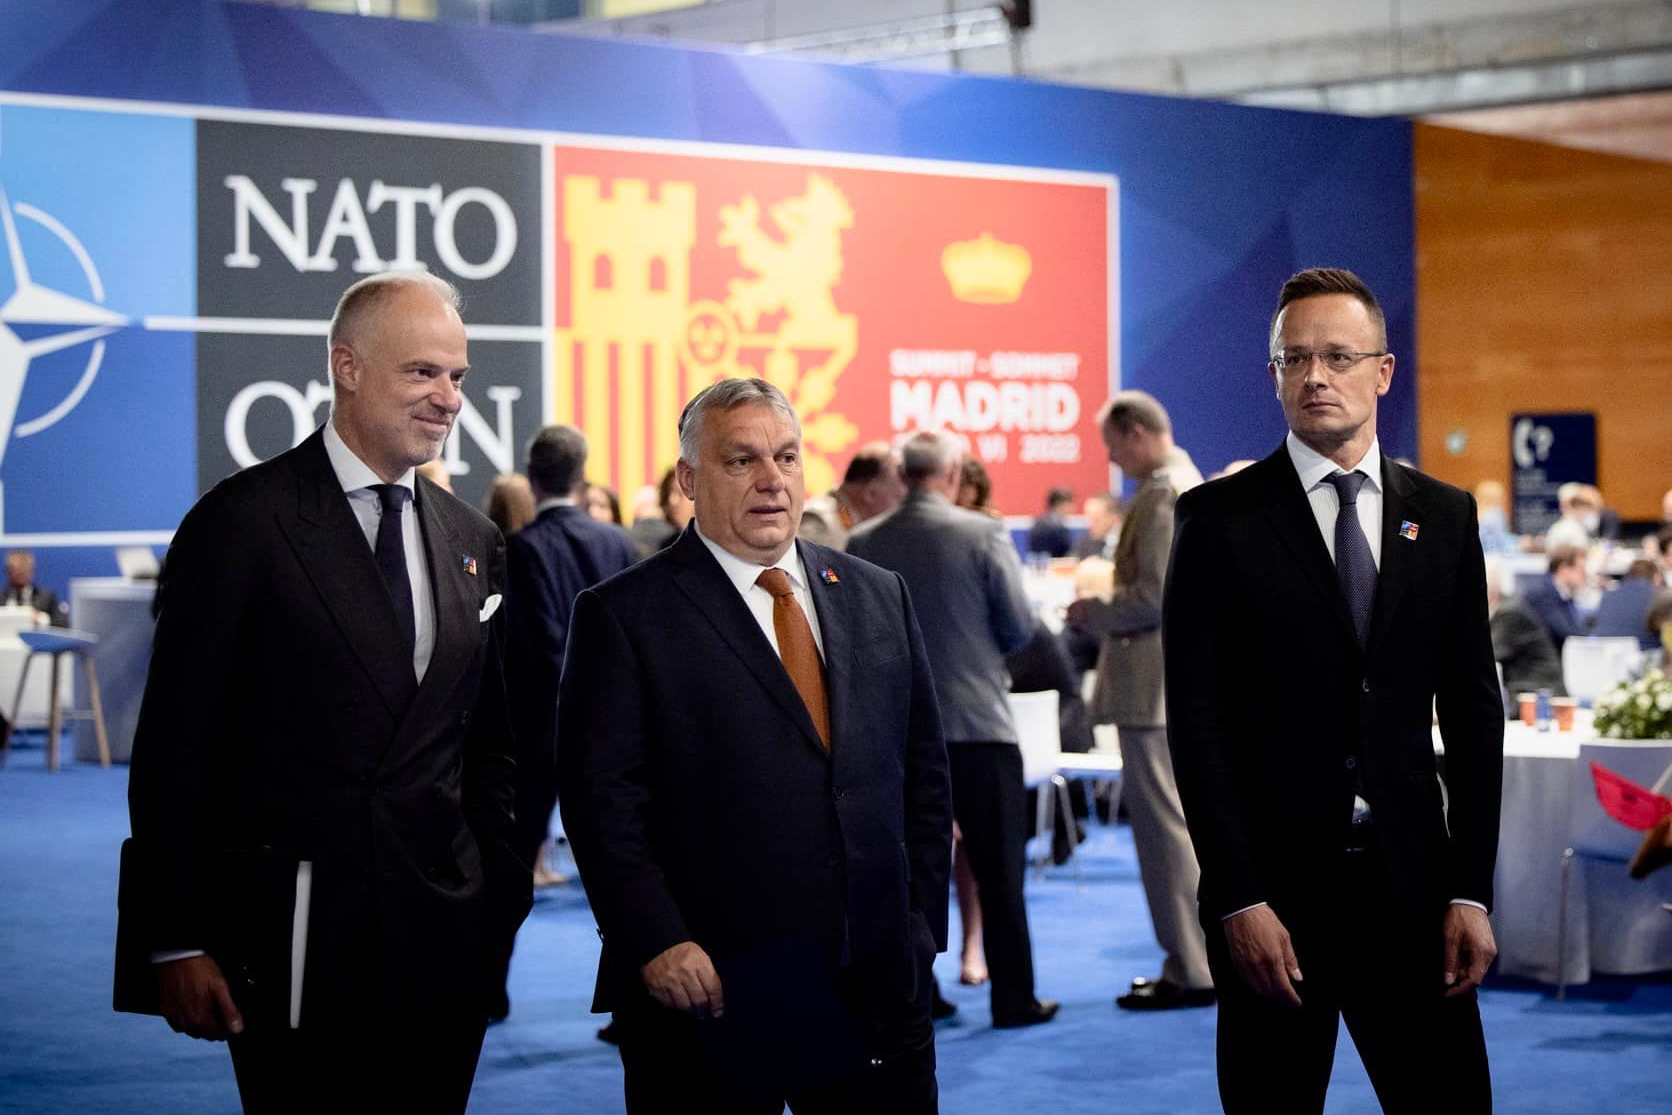 A béke megteremtését helyezzük a NATO erőfeszítéseinek középpontjába - írta Szijjártó